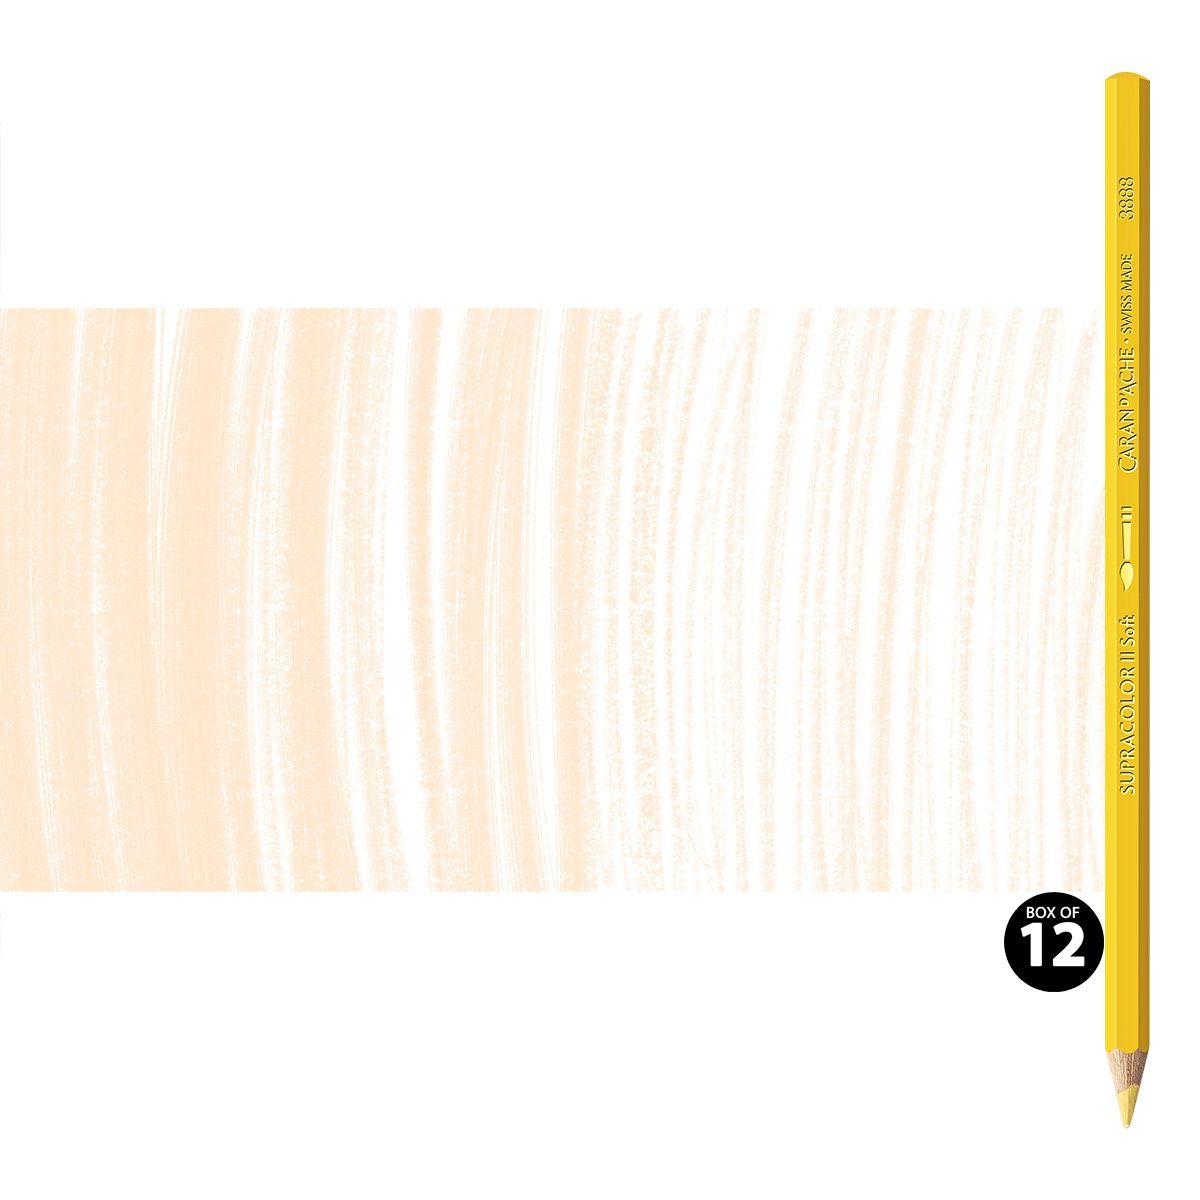 Supracolor II Watercolor Pencils Box of 12 No. 021 - Naples Yellow